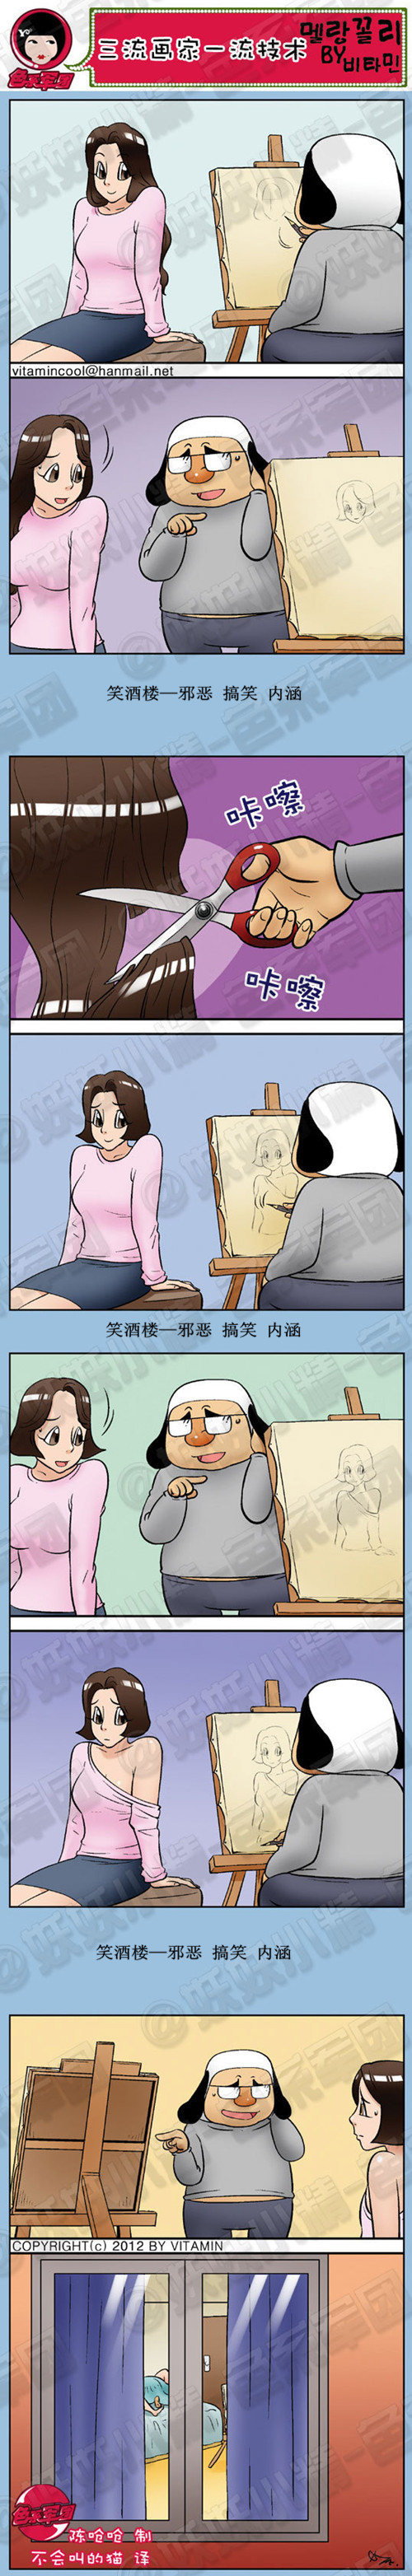 韩国内涵漫画|三流的画家一流的技术